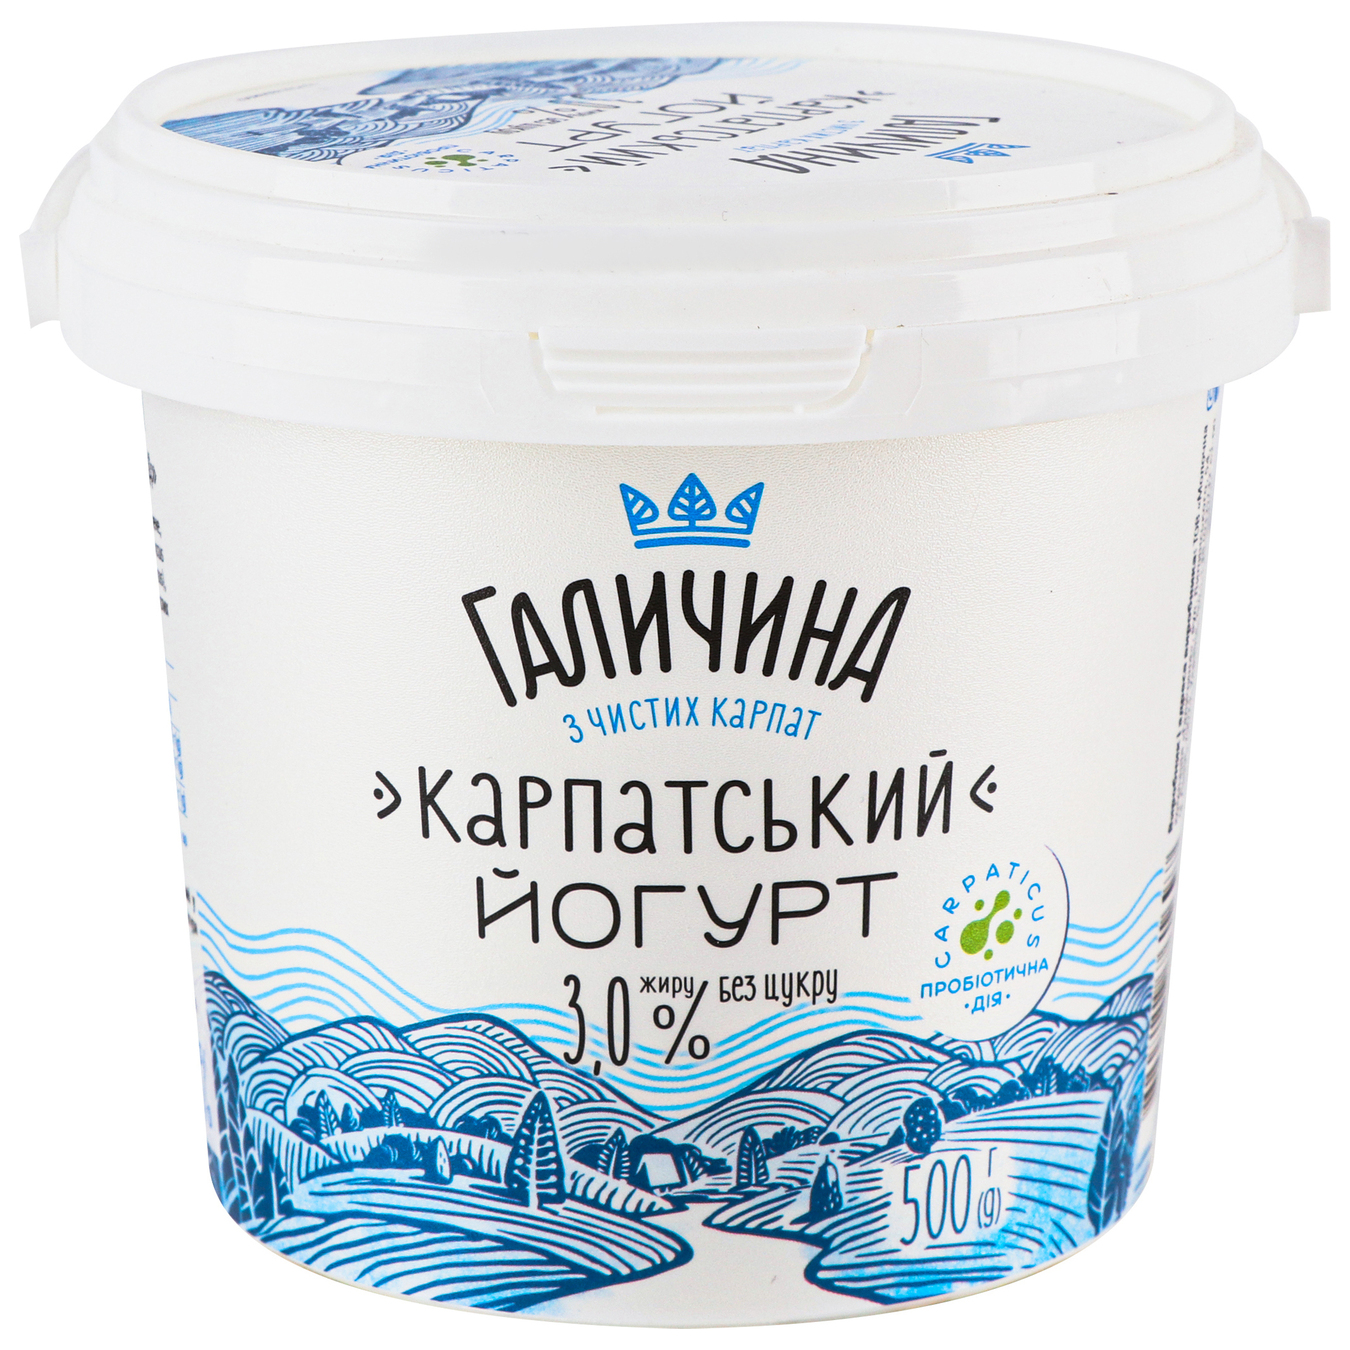 Yogurt Galychyna Carpathian sugar-free 3% 500g 2